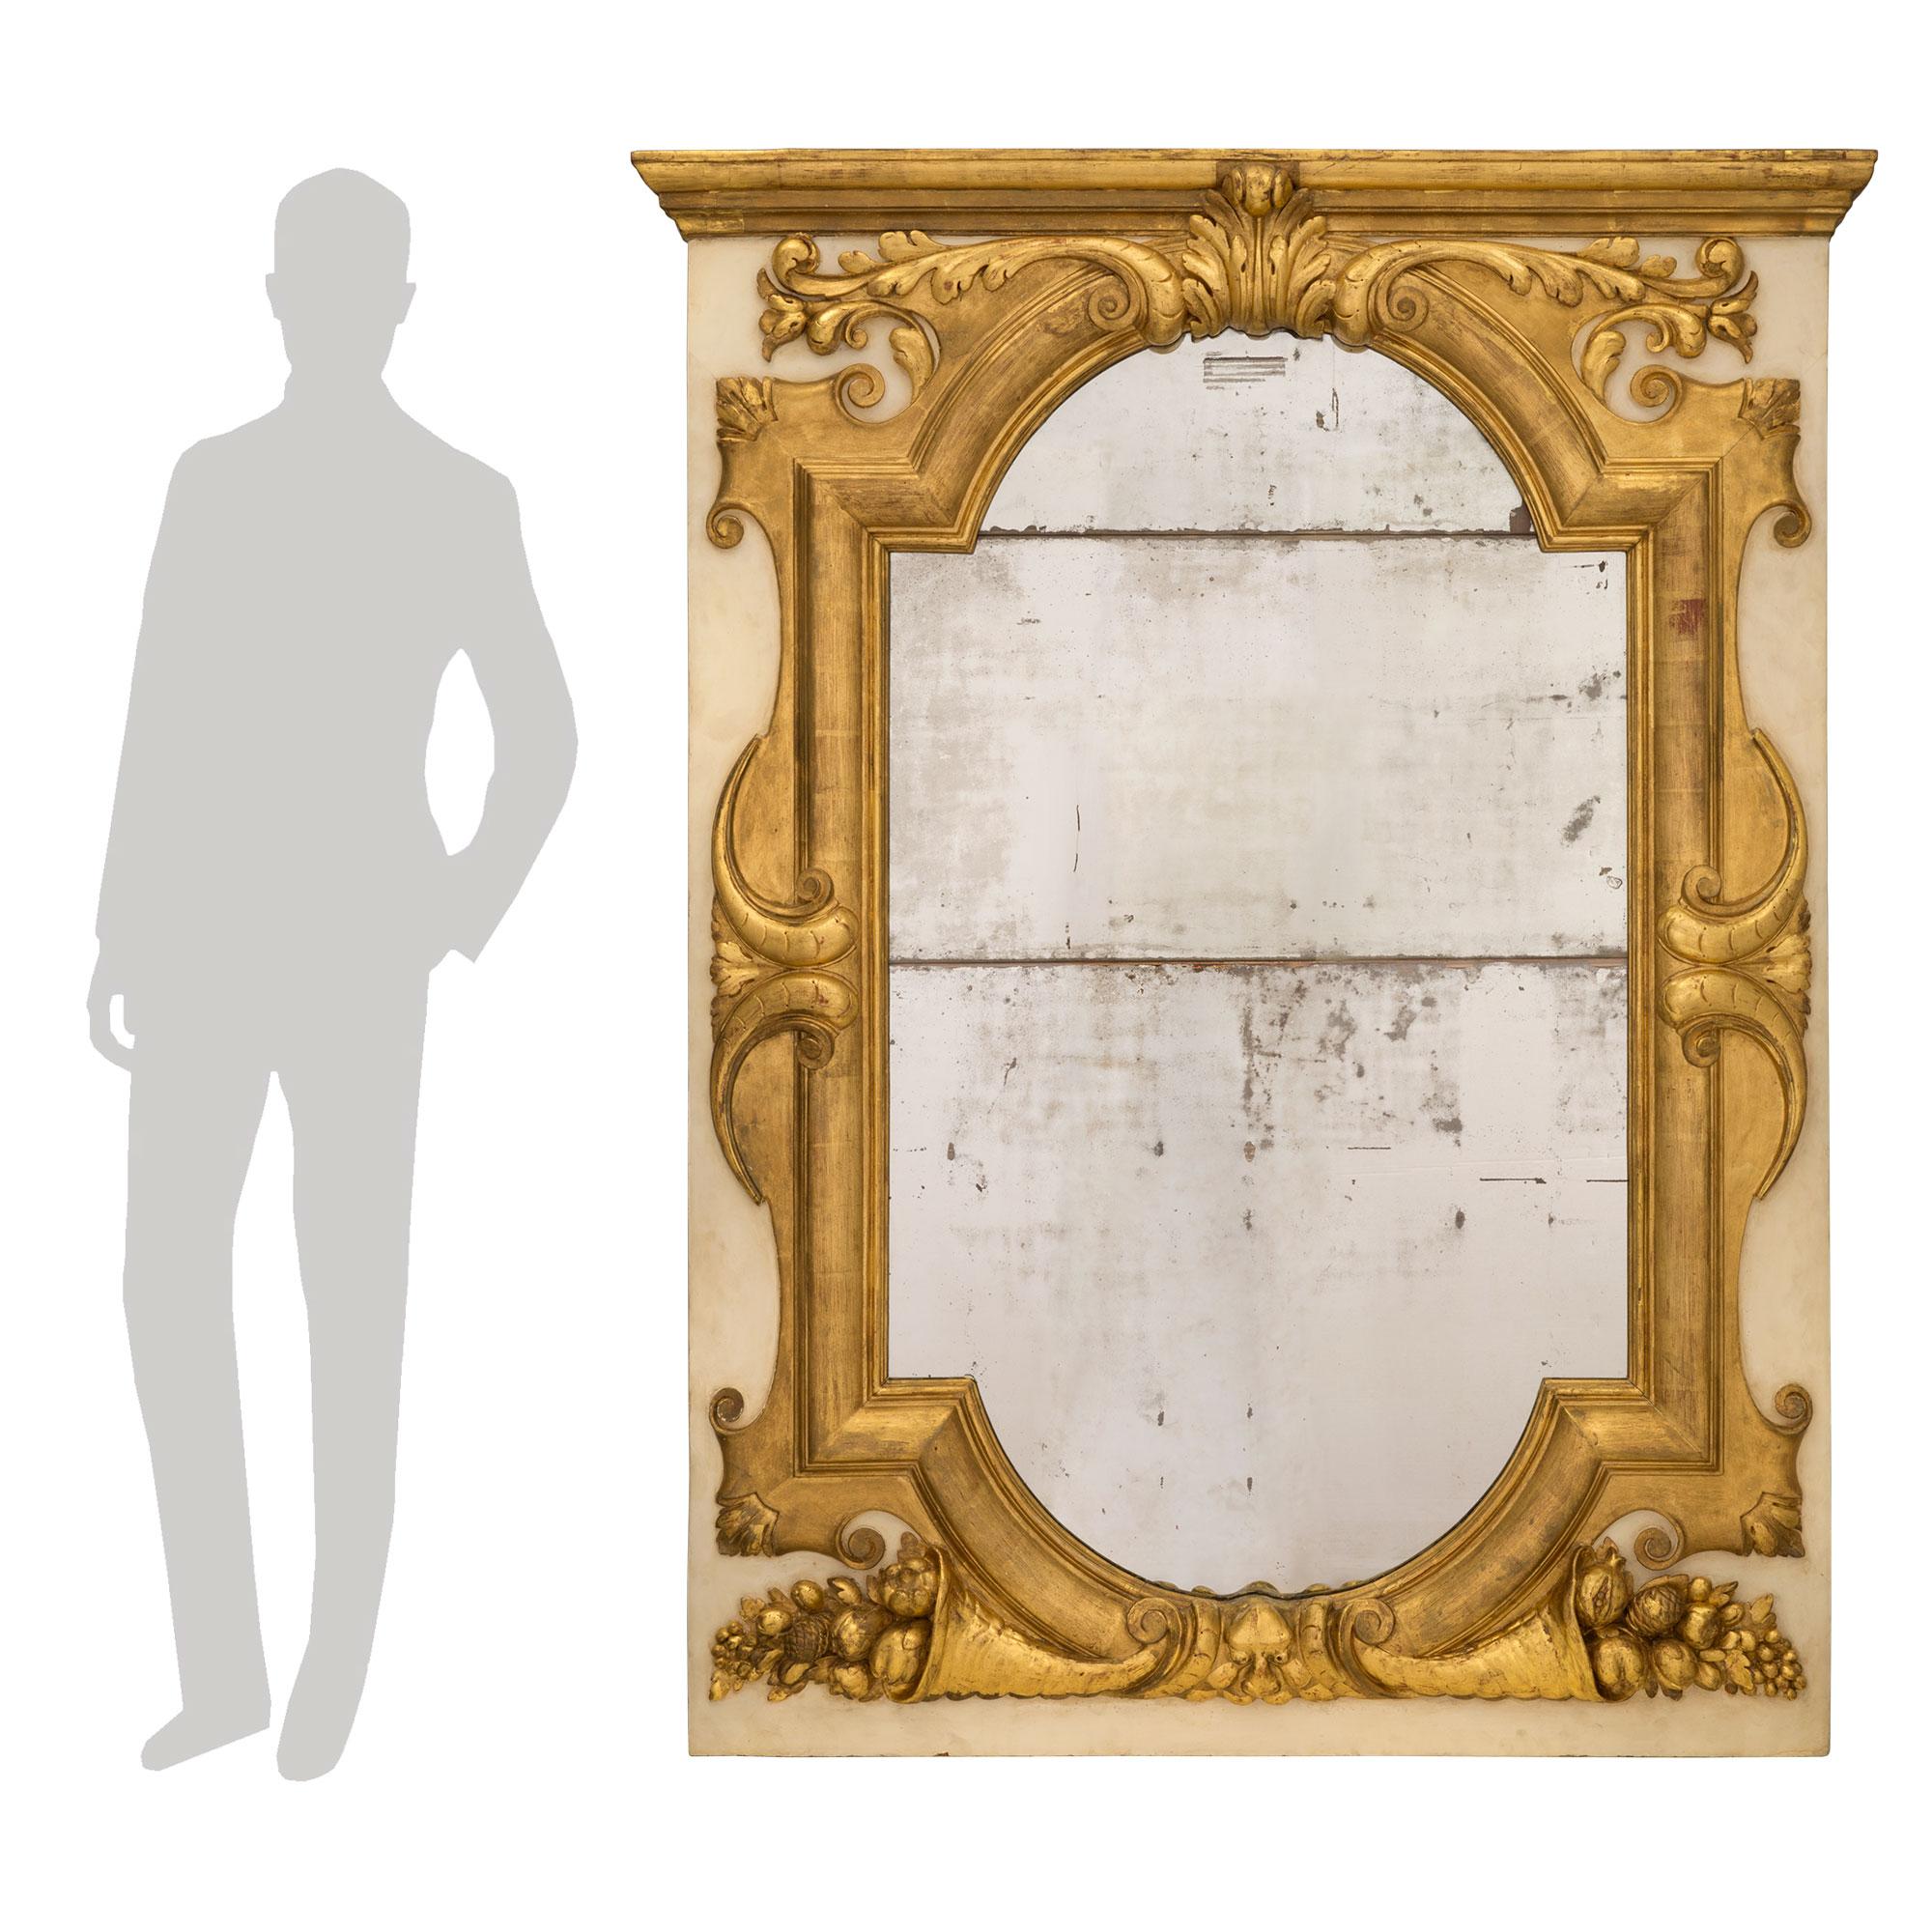 Un puissant miroir italien du XIXe siècle en bois doré et blanc cassé patiné. La plaque de miroir originale est entourée d'une impressionnante et très décorative bordure en bois doré moucheté sur un fond patiné blanc cassé. À la base, on trouve des